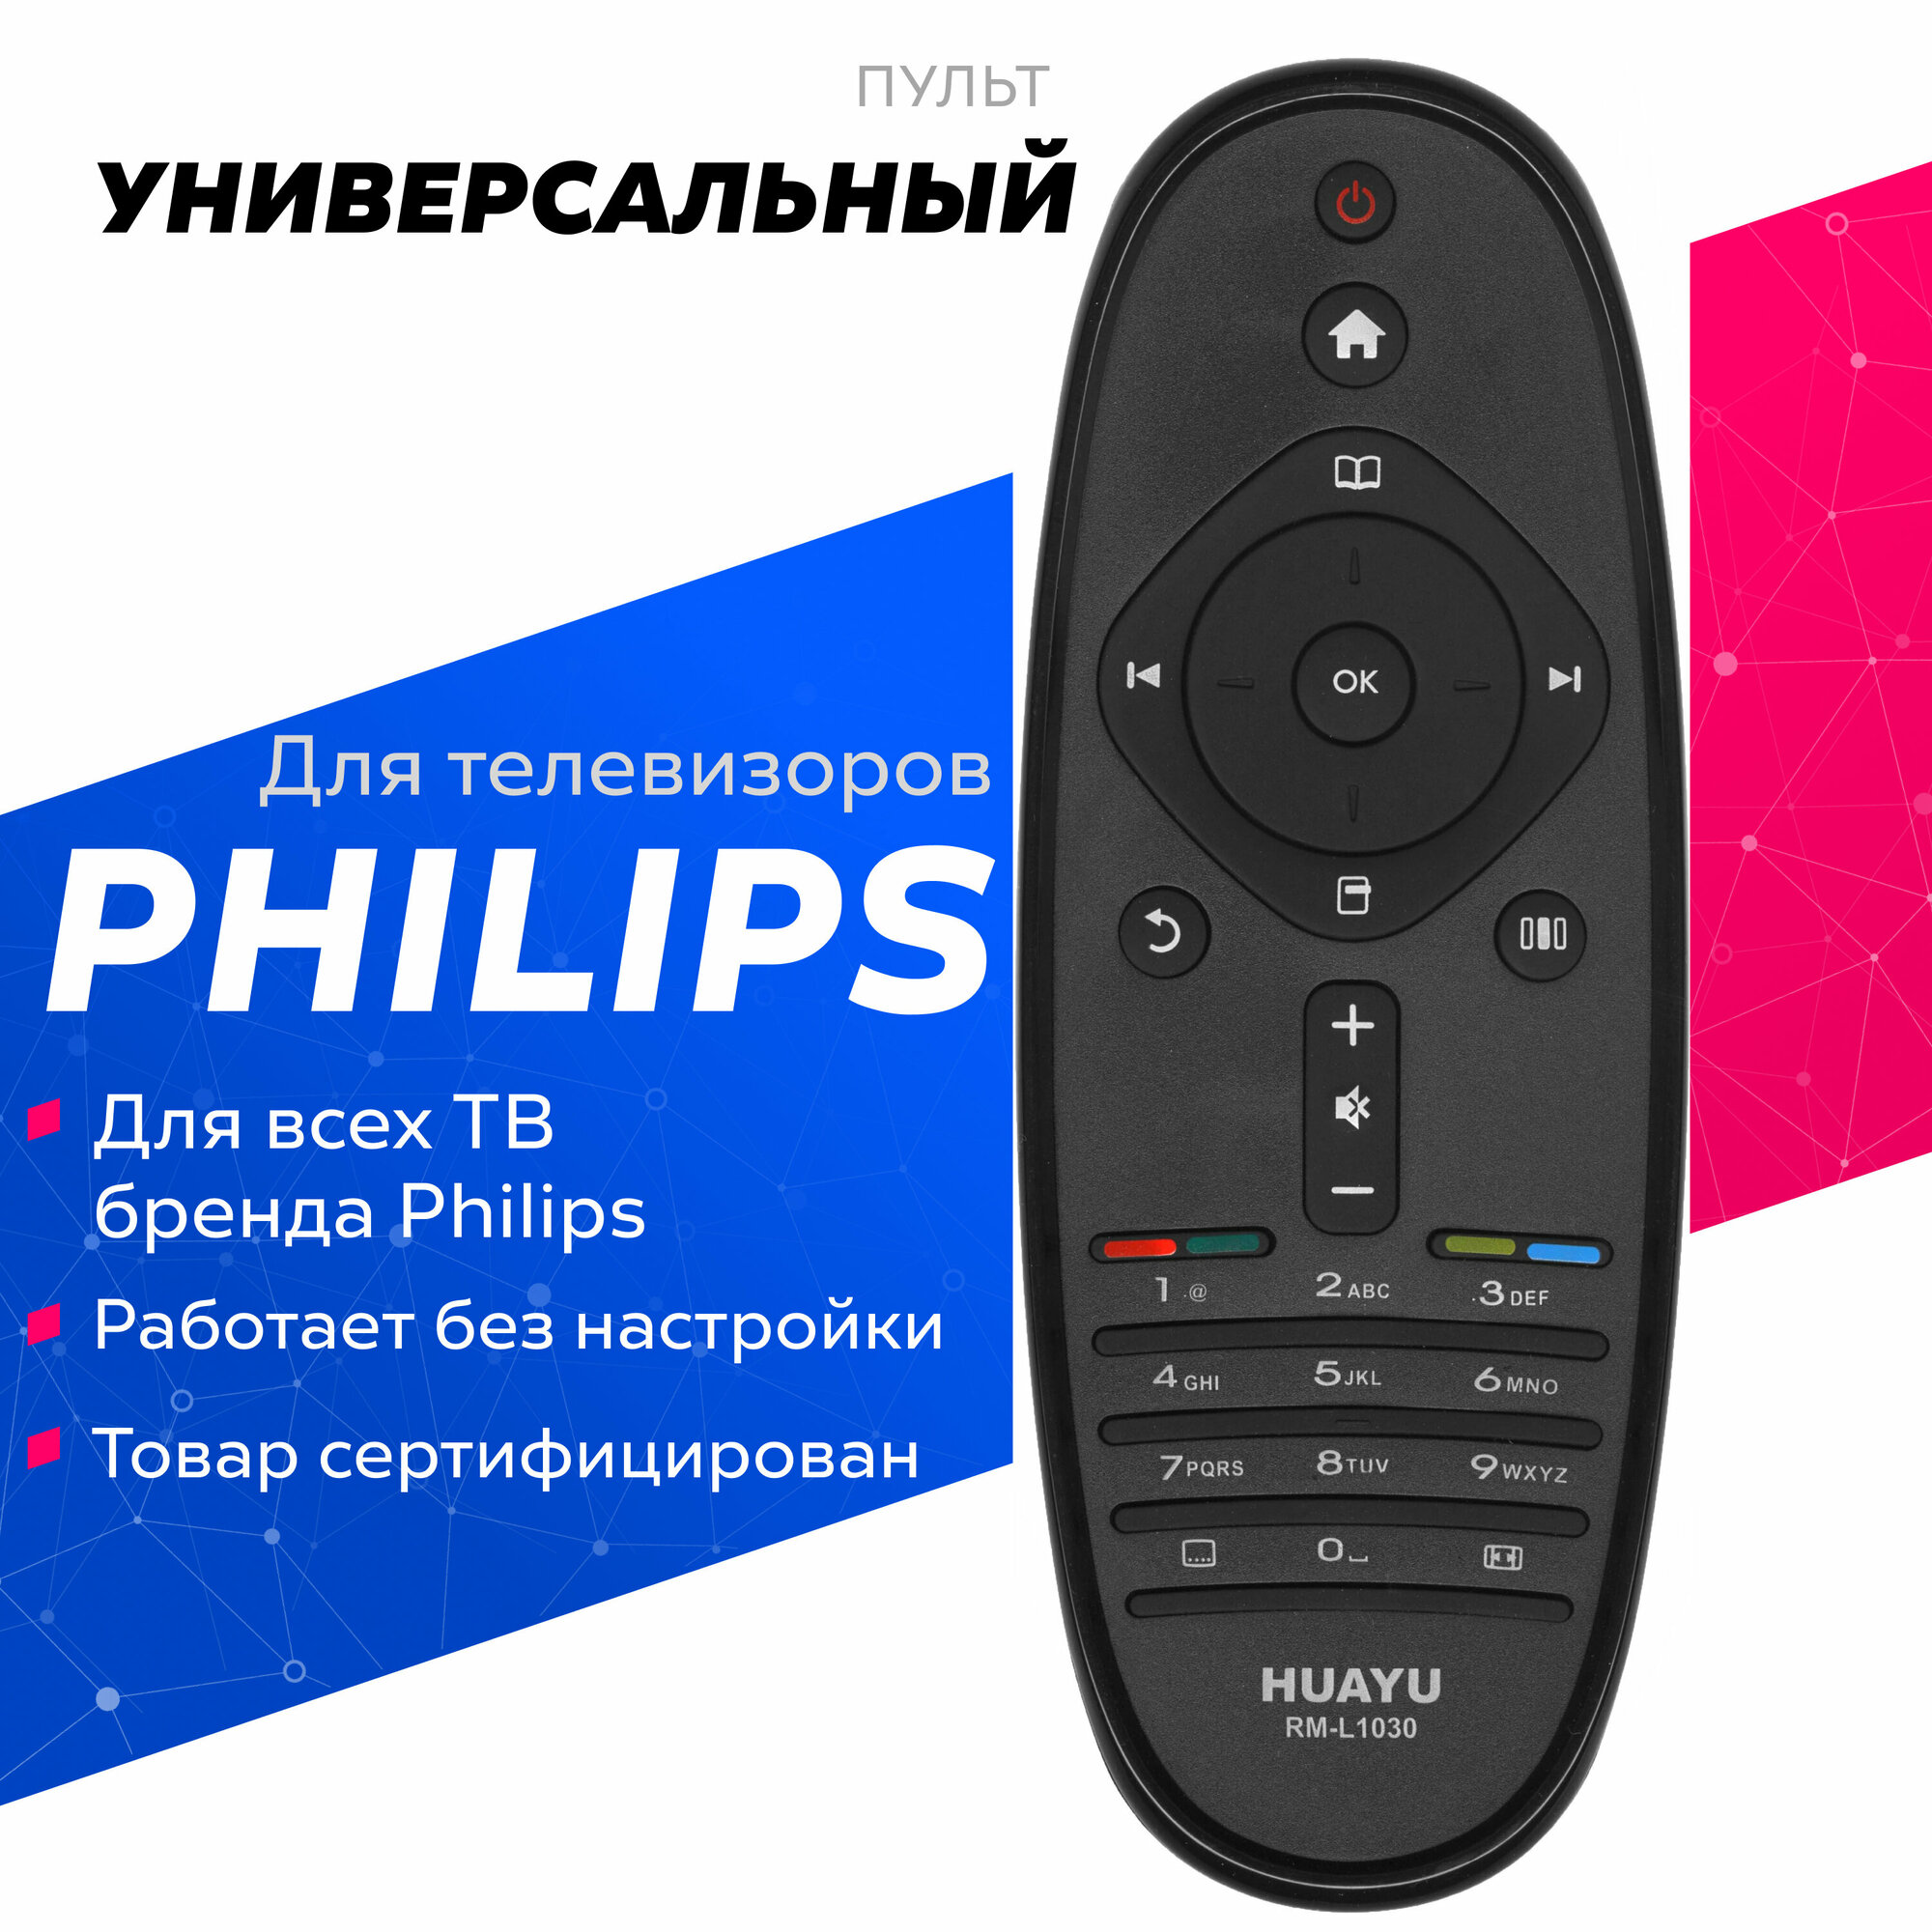 Пульт Huayu для Philips RM-L1030 (2543) универсальные